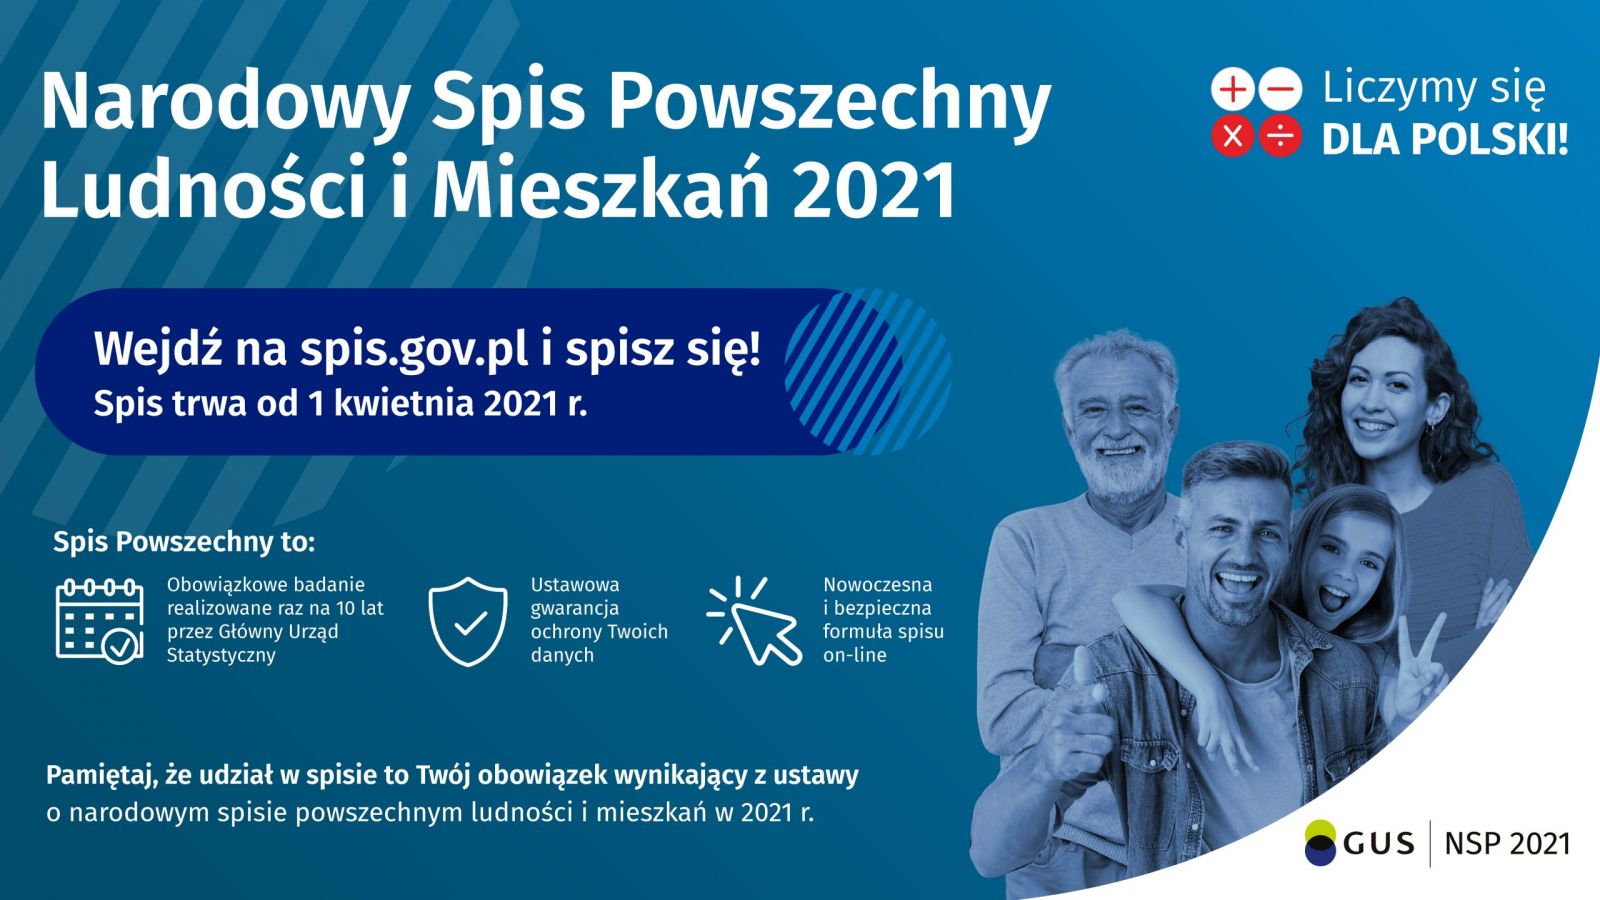 baner promujący Narodowy Spis Powszechny Ludności i Mieszkań 2021